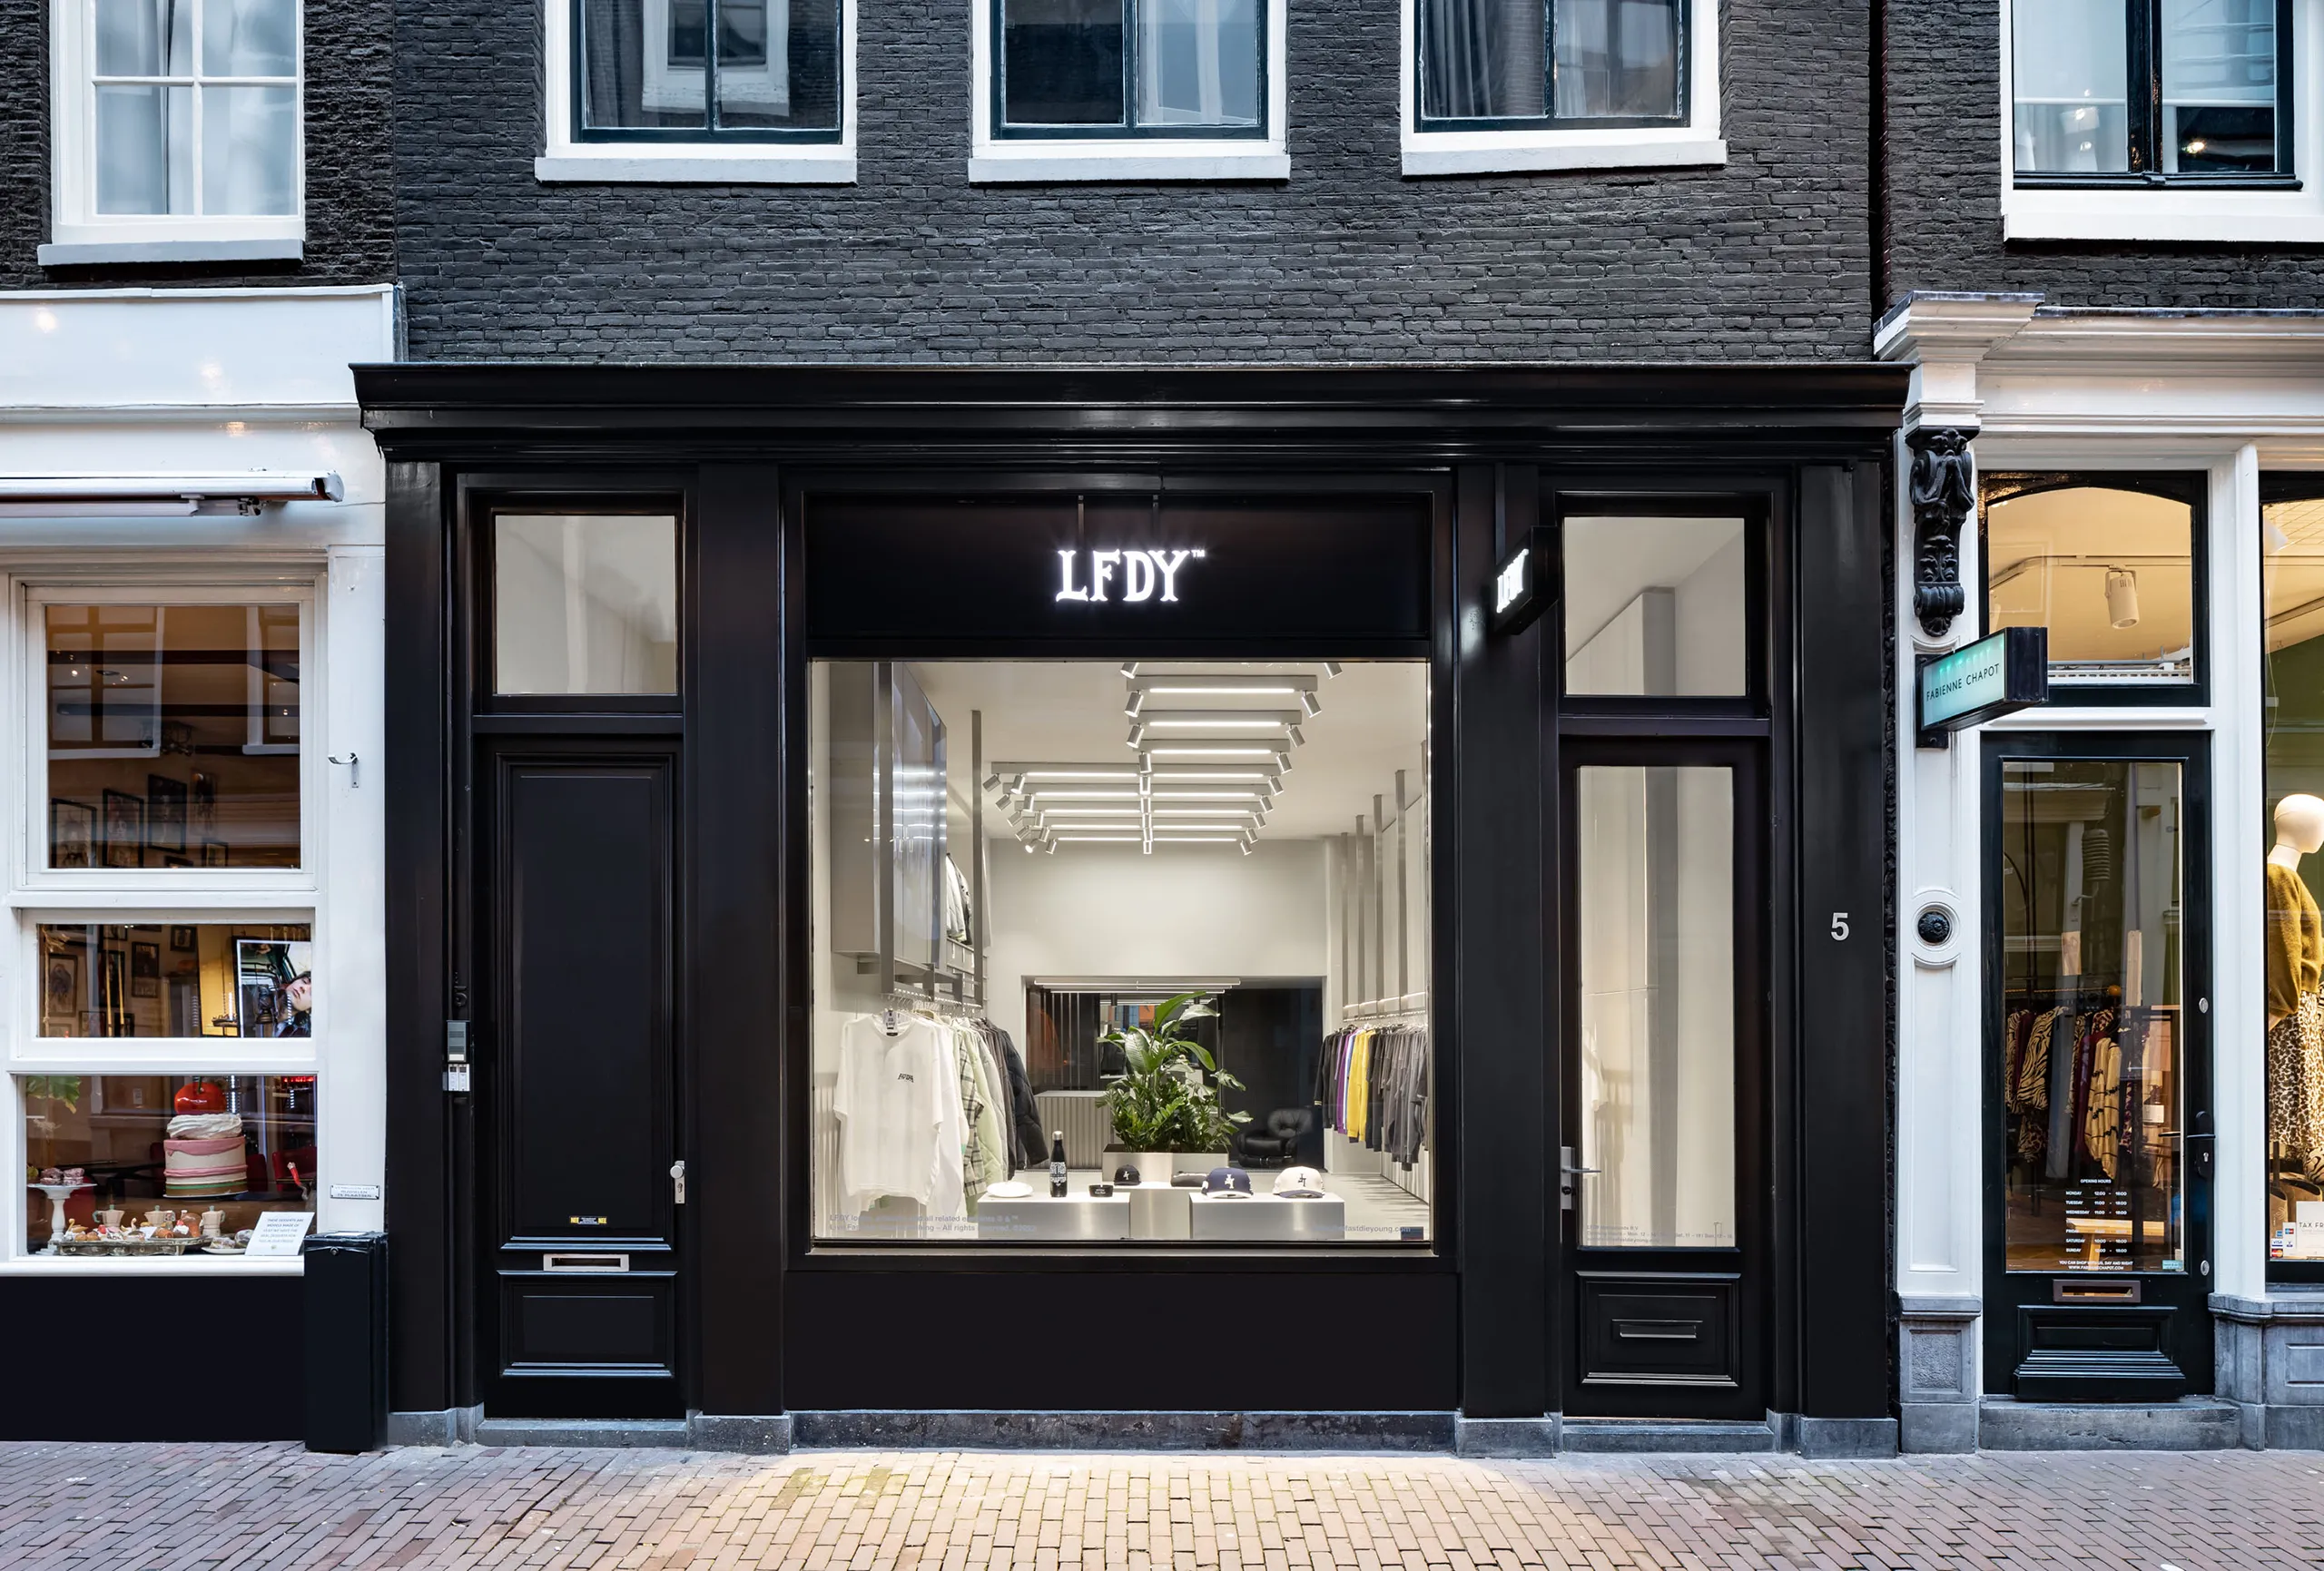 Außenansicht des LFDY Stores in Amsterdam